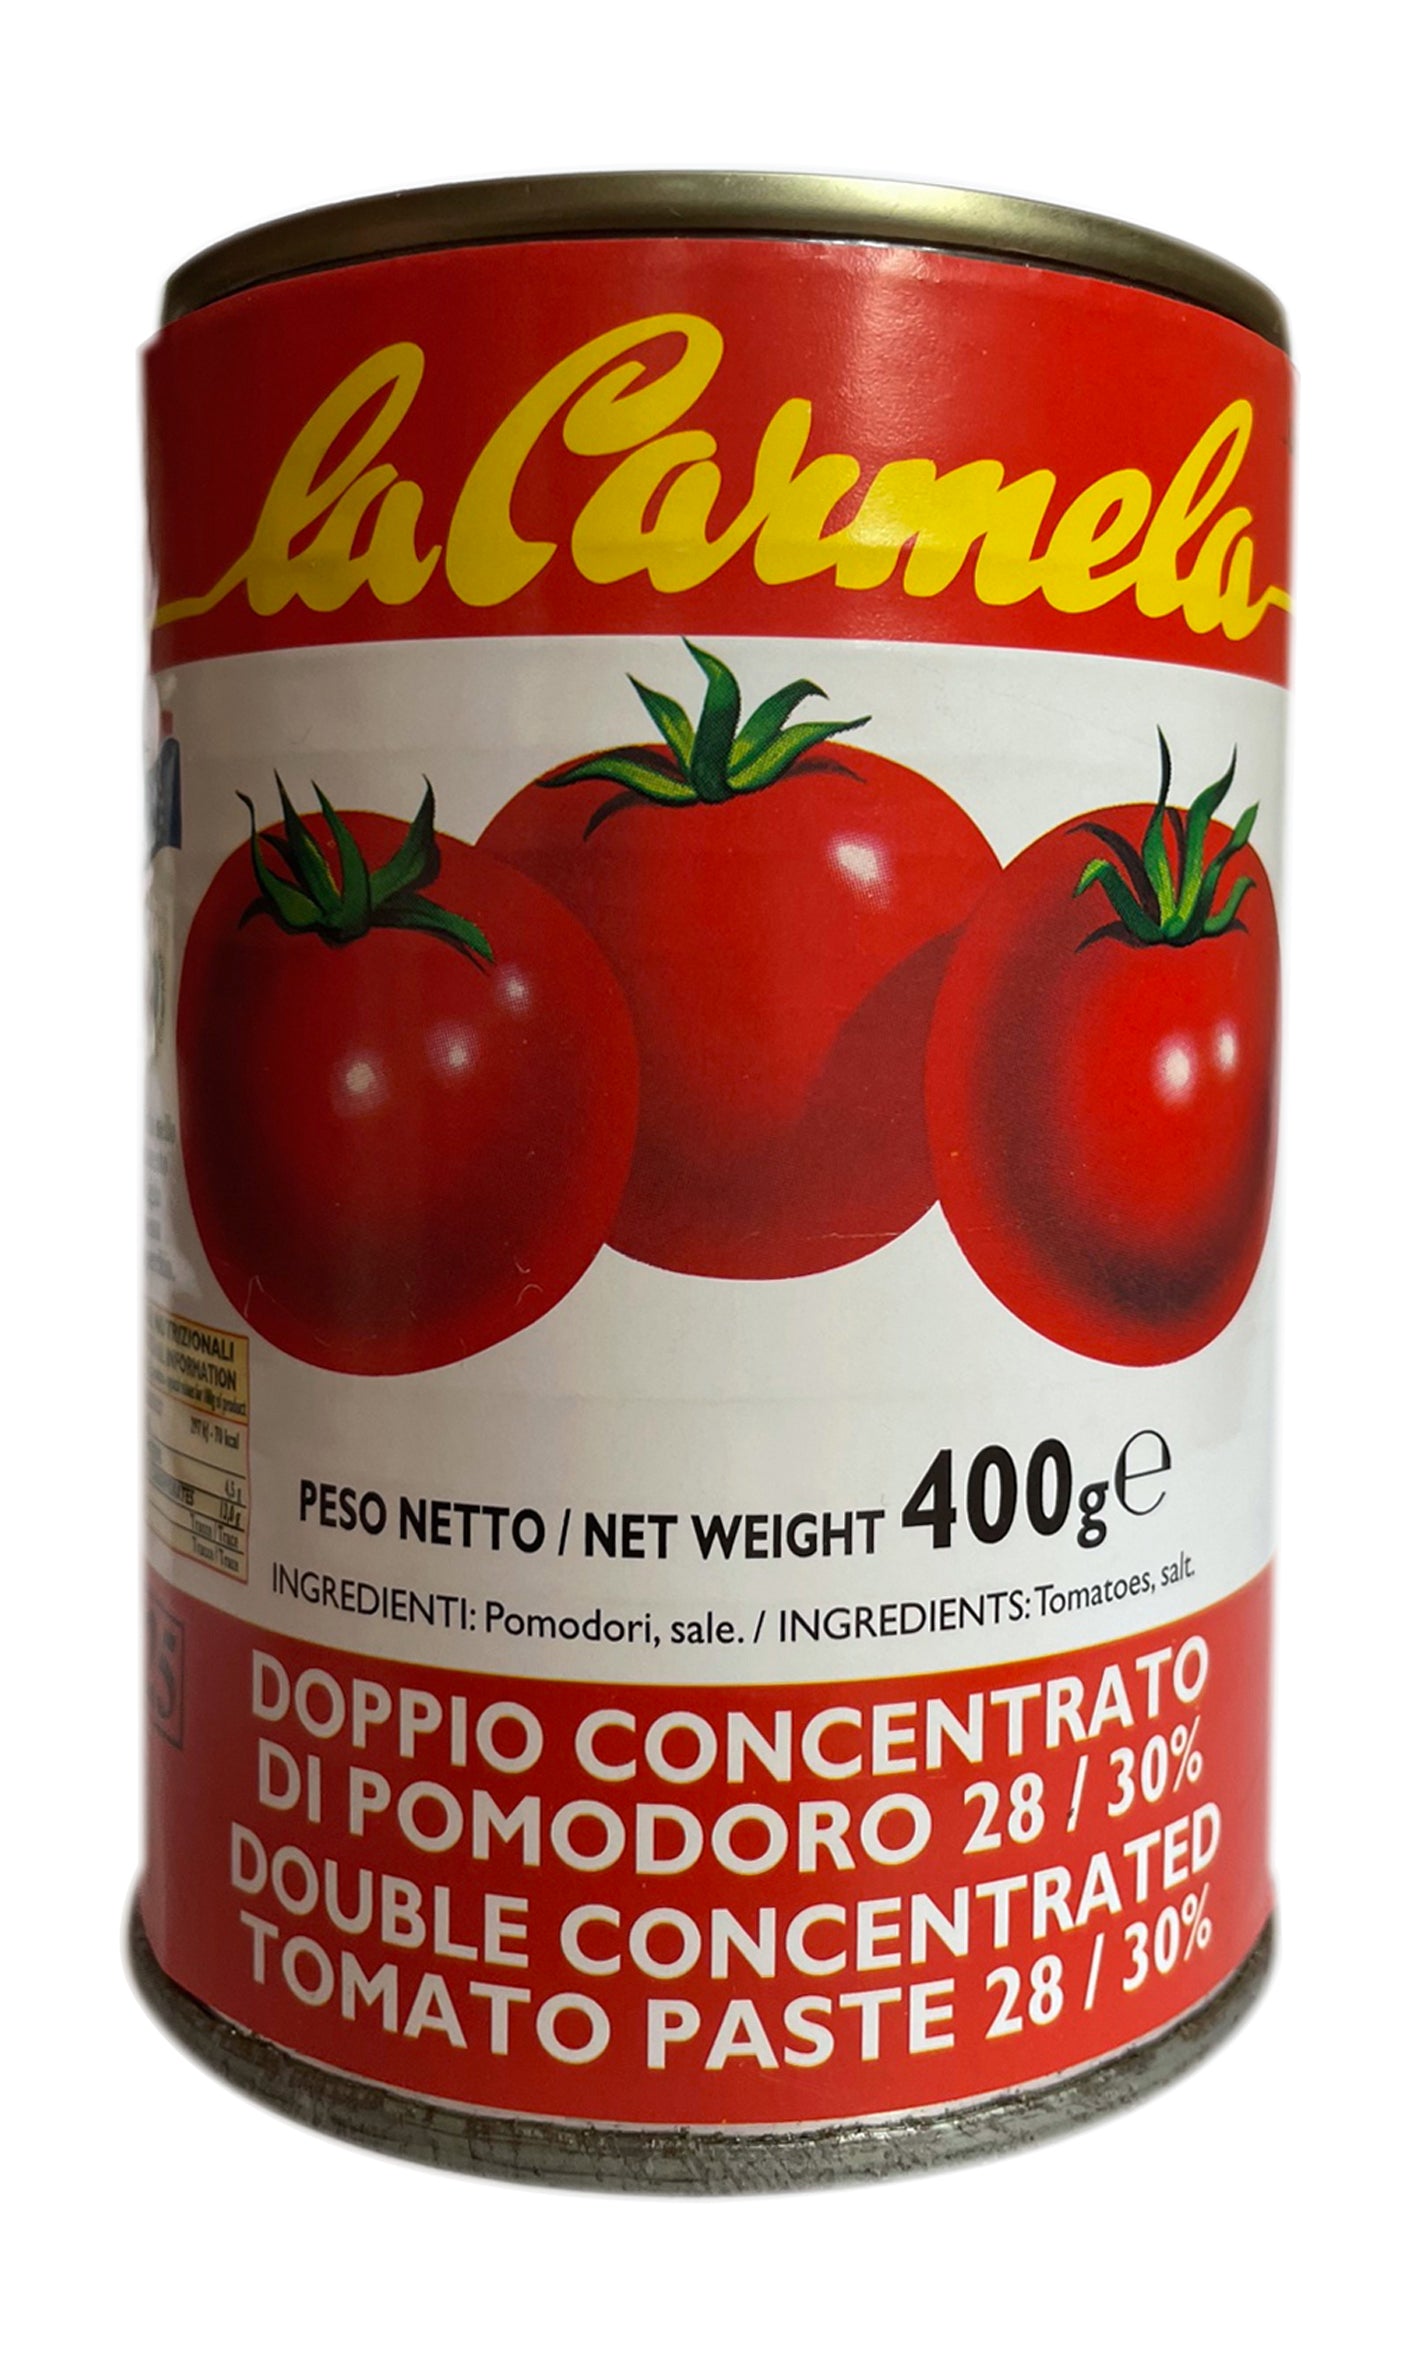 La Carmela - Tomato Double concentrate - 400g